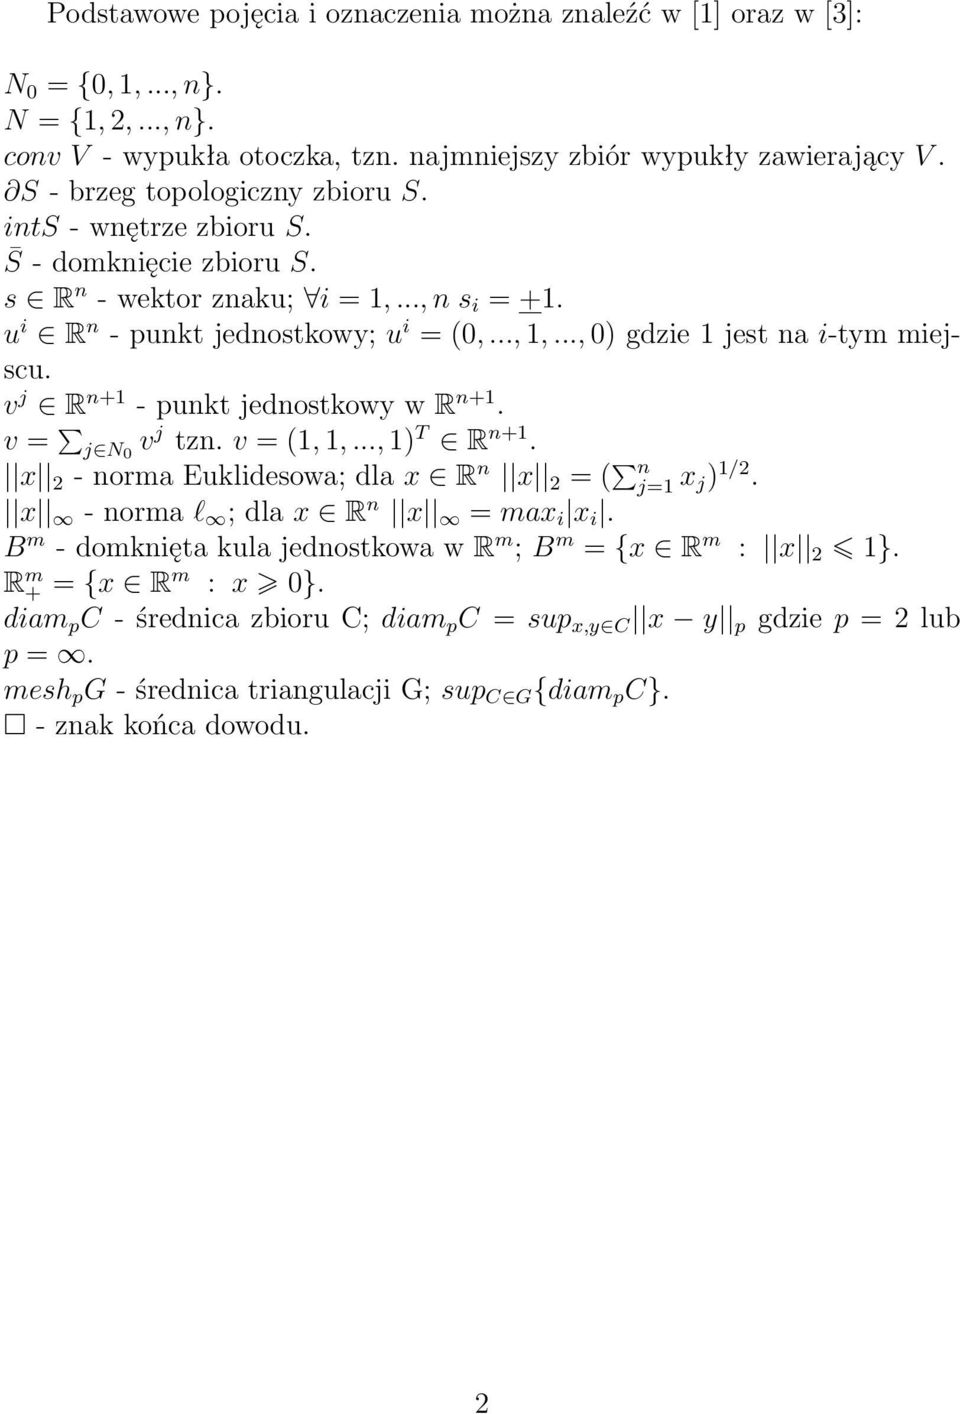 .., 0) gdzie 1 jest na i-tym miejscu. v j R n+1 - punkt jednostkowy w R n+1. v = j N 0 v j tzn. v = (1, 1,..., 1) T R n+1. x 2 - norma Euklidesowa; dla x R n x 2 = ( n j=1 x j ) 1/2.